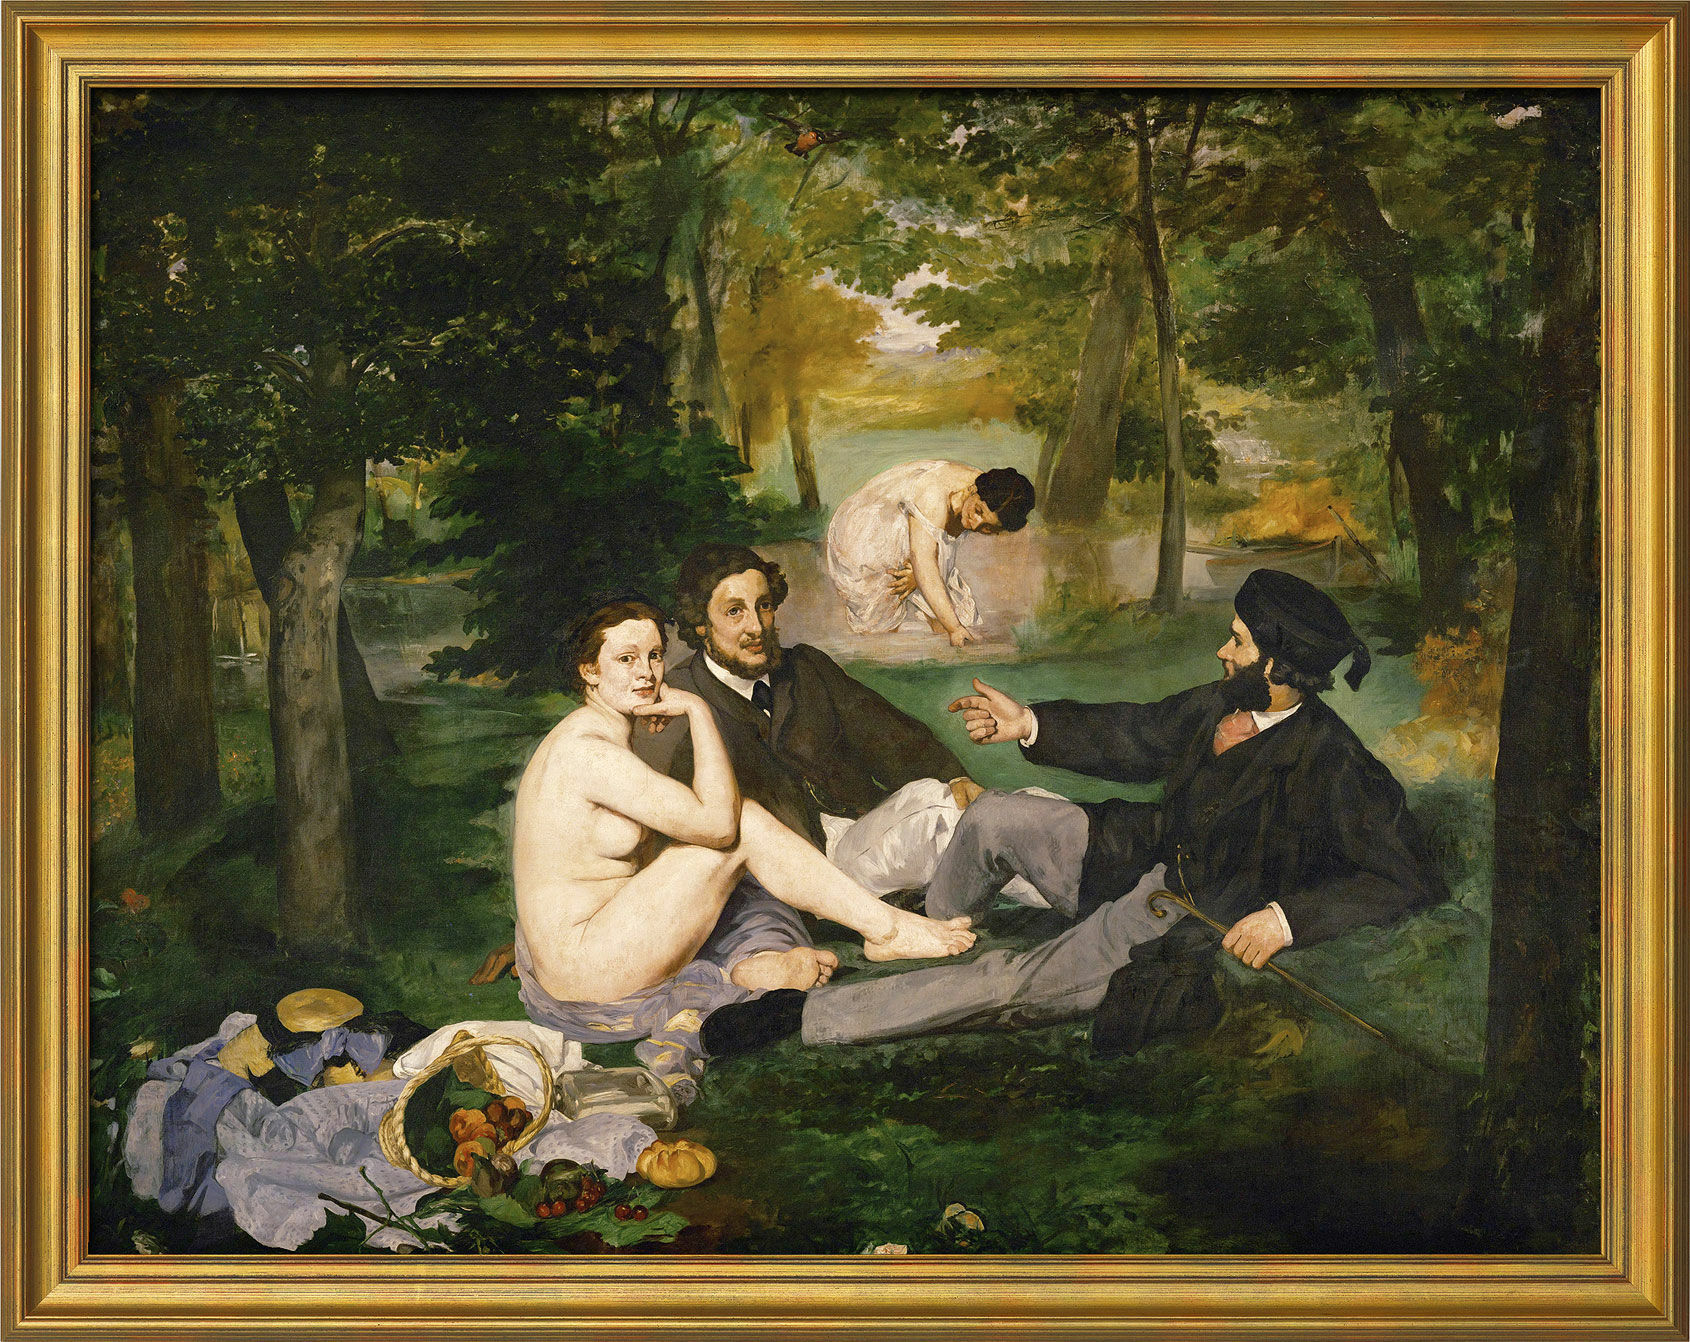 Billede "Le Déjeuner sur l'herbe (Frokosten på græsset)" (1863), indrammet von Edouard Manet